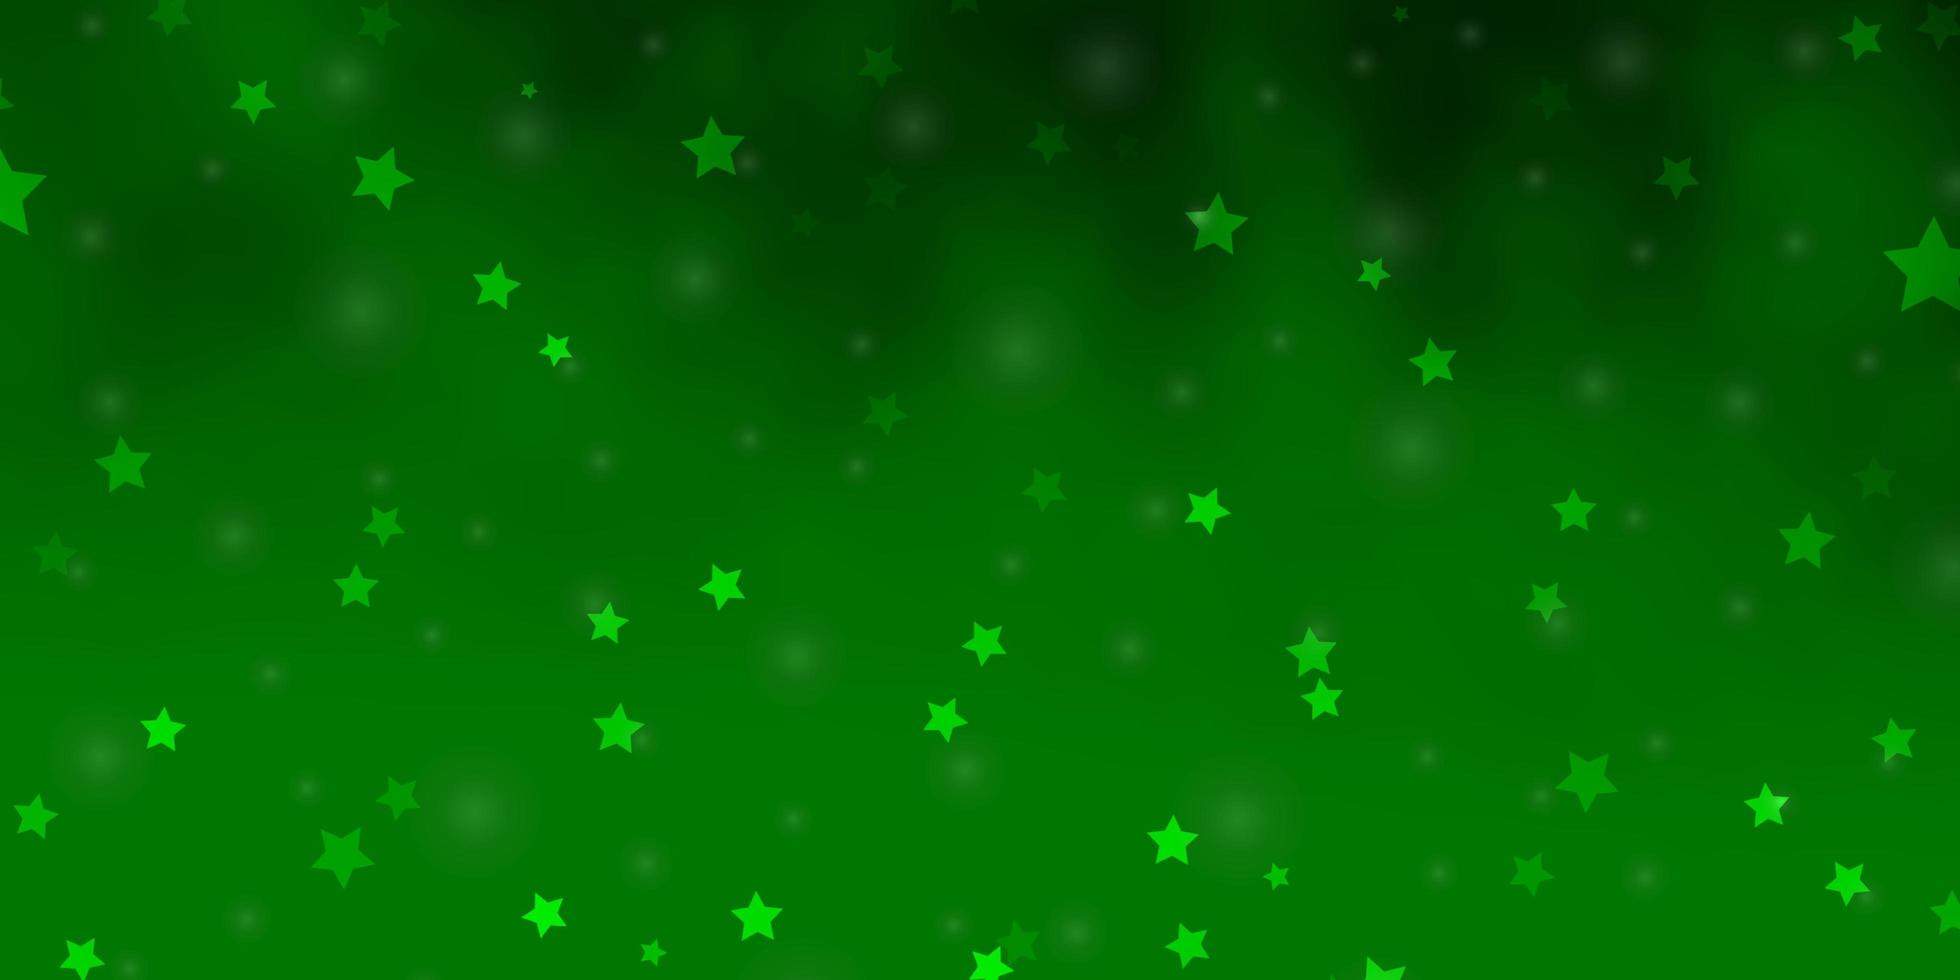 texture vettoriale verde chiaro con bellissime stelle. illustrazione astratta geometrica moderna con le stelle. modello per siti Web, pagine di destinazione.